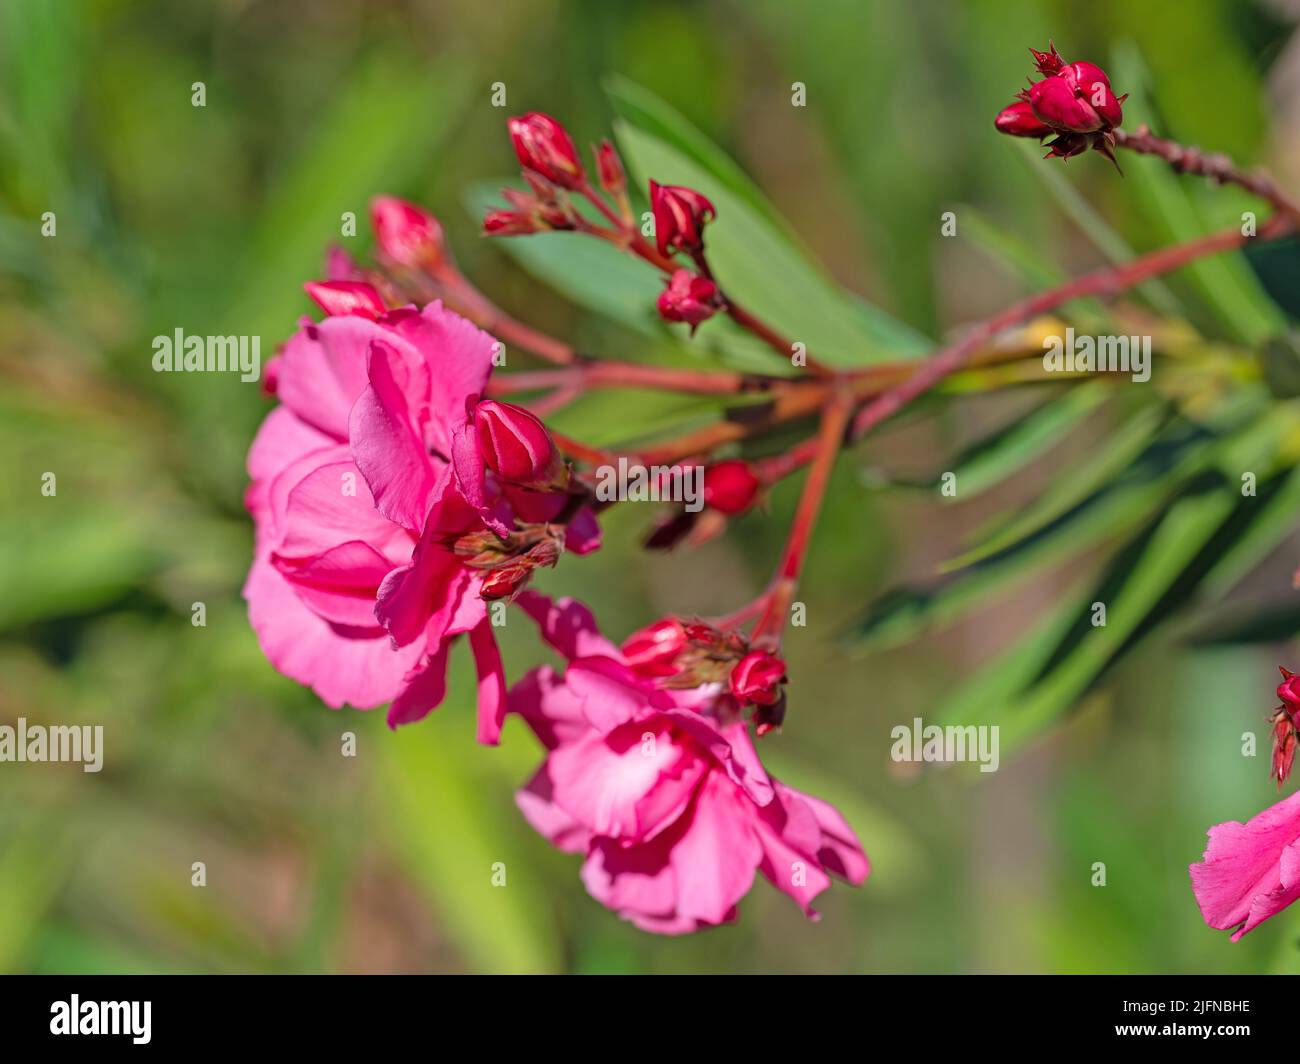 Red flowering oleander, Nerium oleander Stock Photo